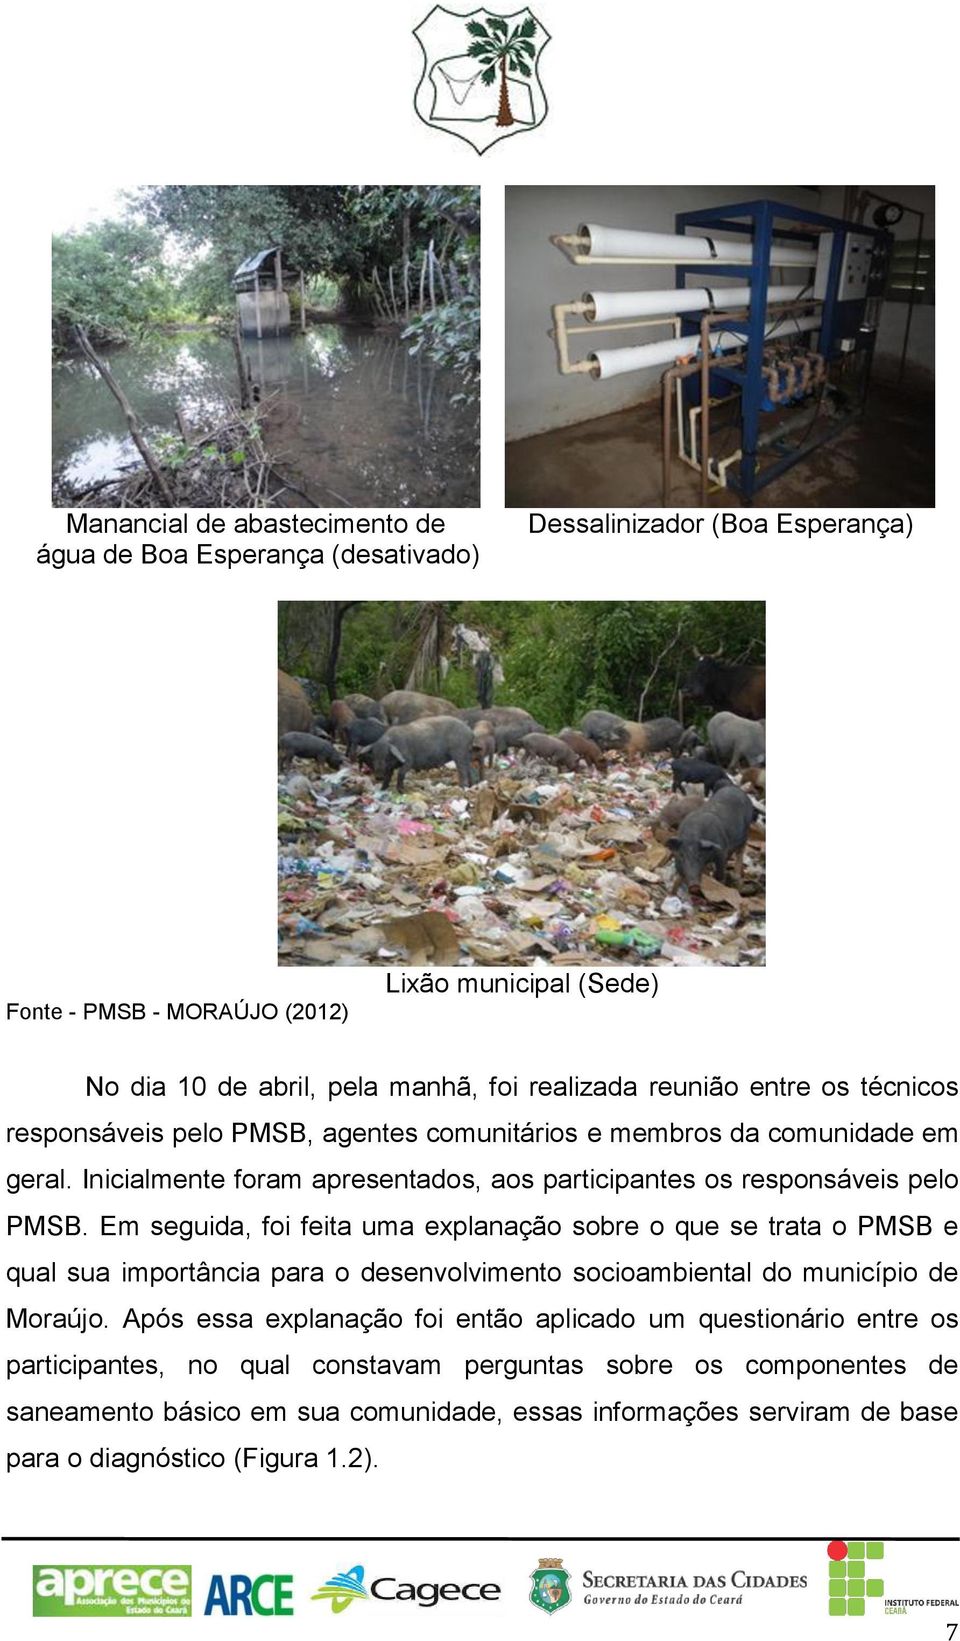 Em seguida, foi feita uma explanação sobre o que se trata o PMSB e qual sua importância para o desenvolvimento socioambiental do município de Moraújo.